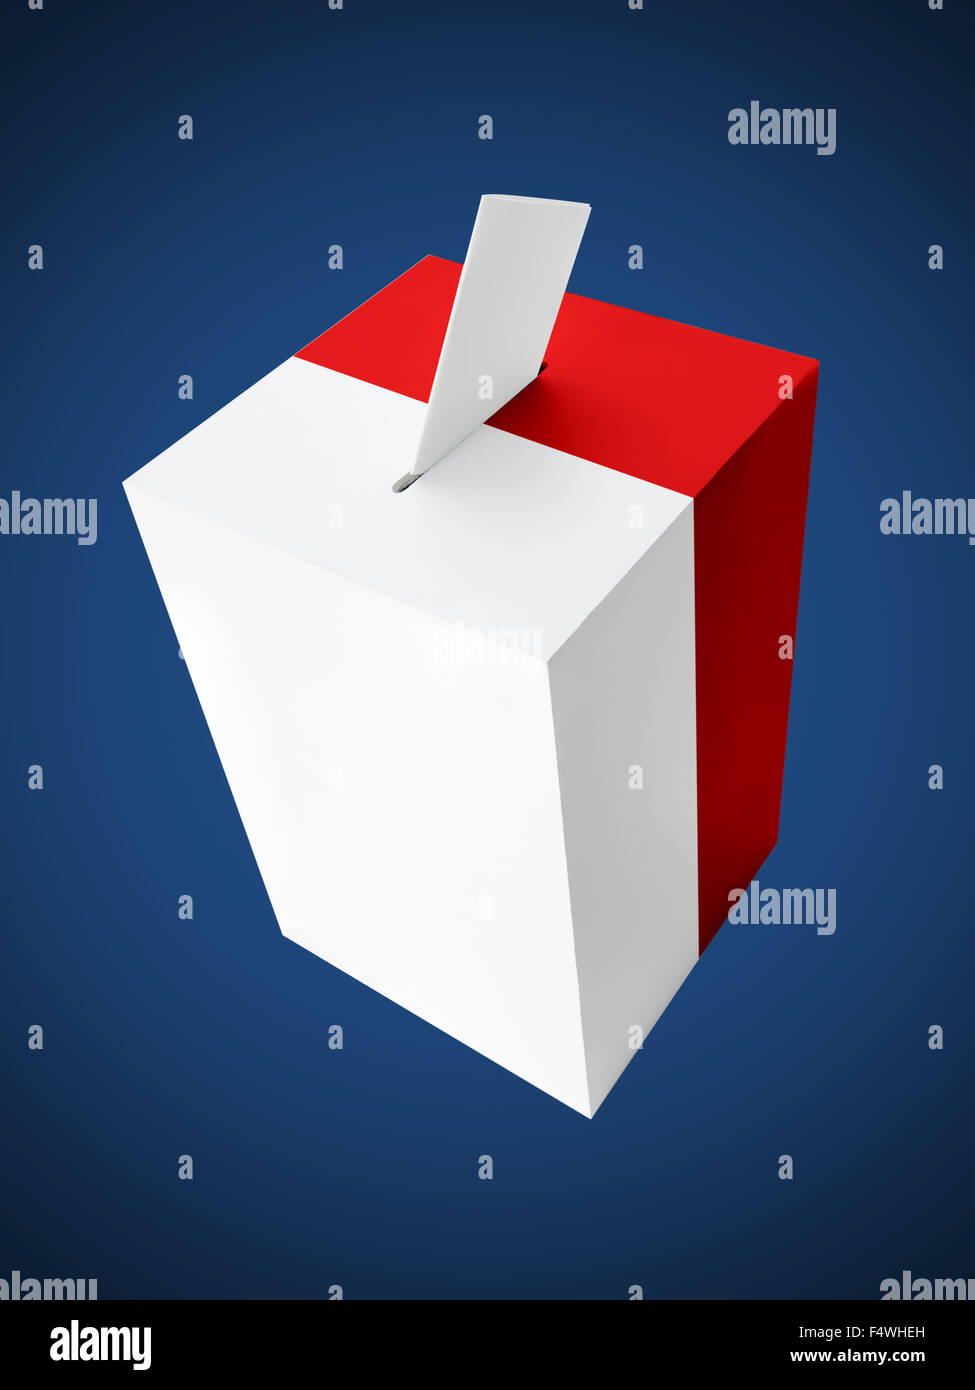 Il polacco di colore rosso e bianco urne con scheda di voto su sfondo blu scuro Foto Stock